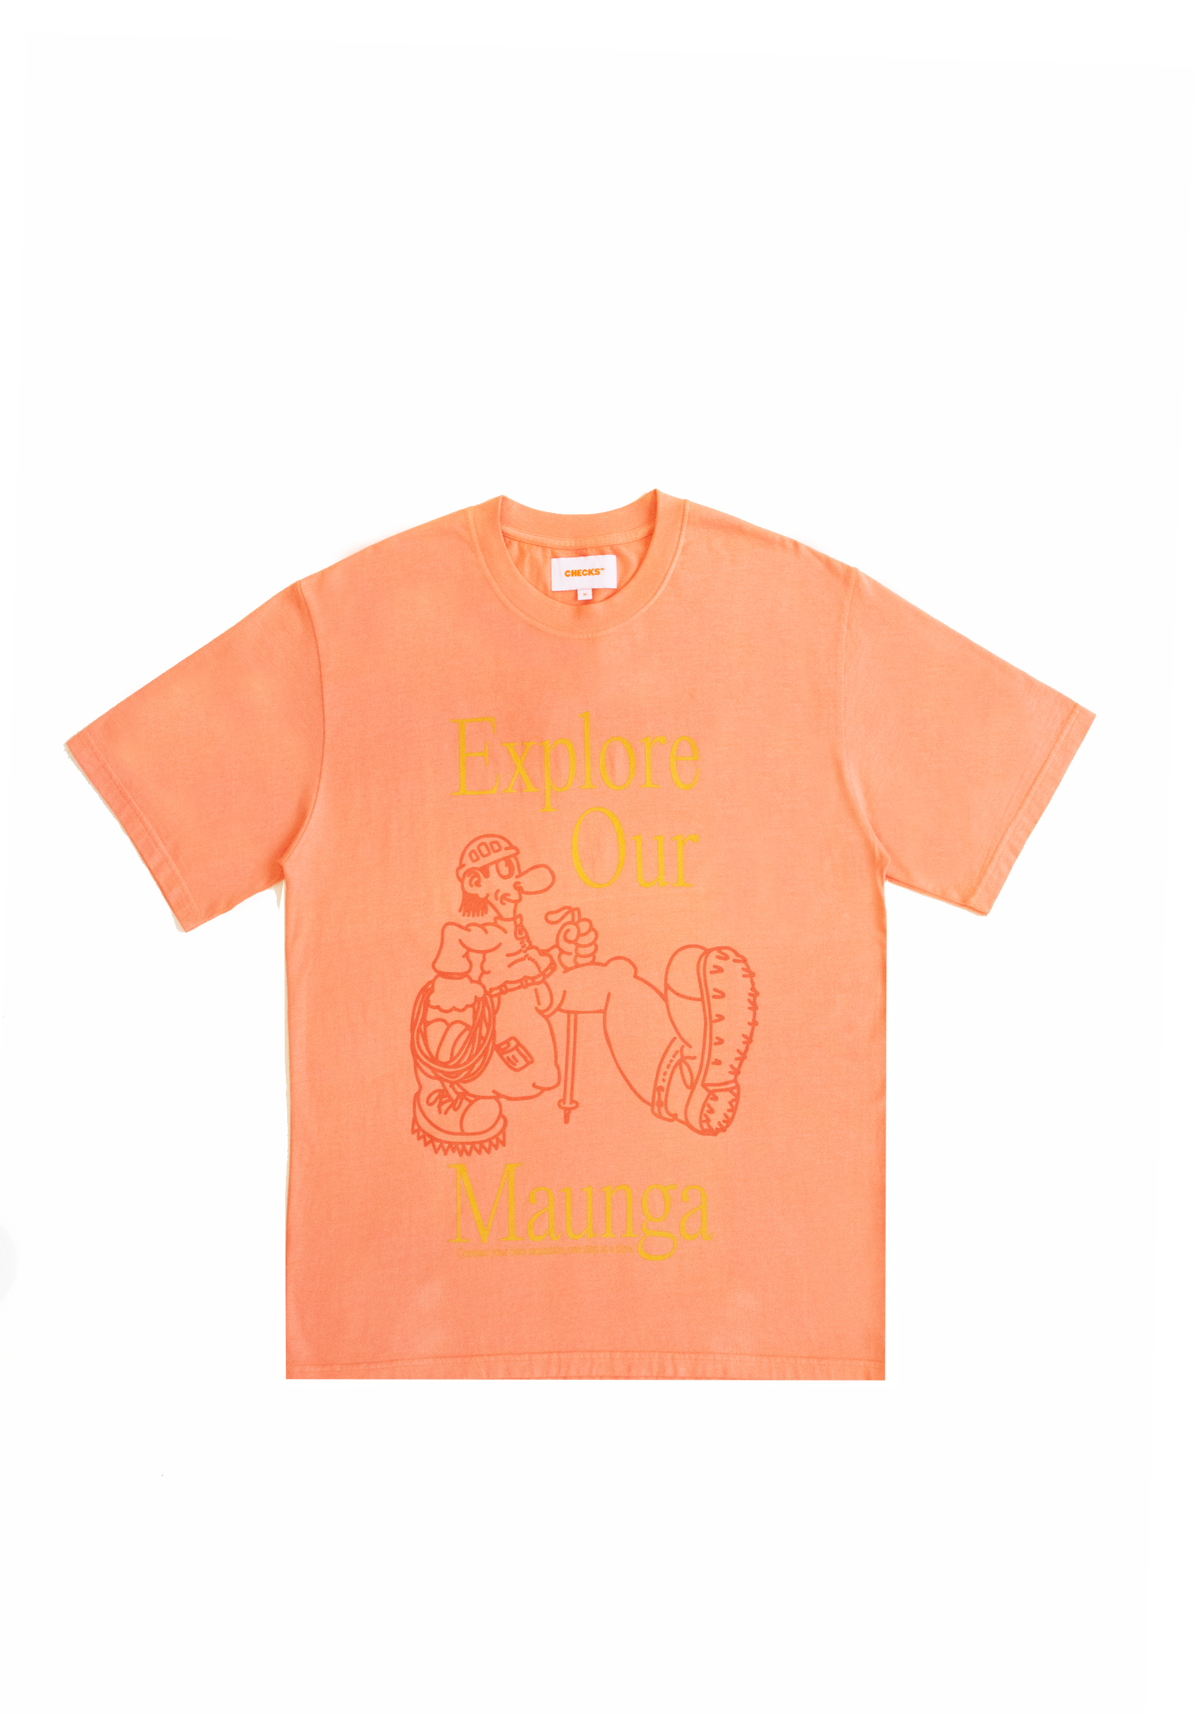 Maunga T-shirt Tangerine